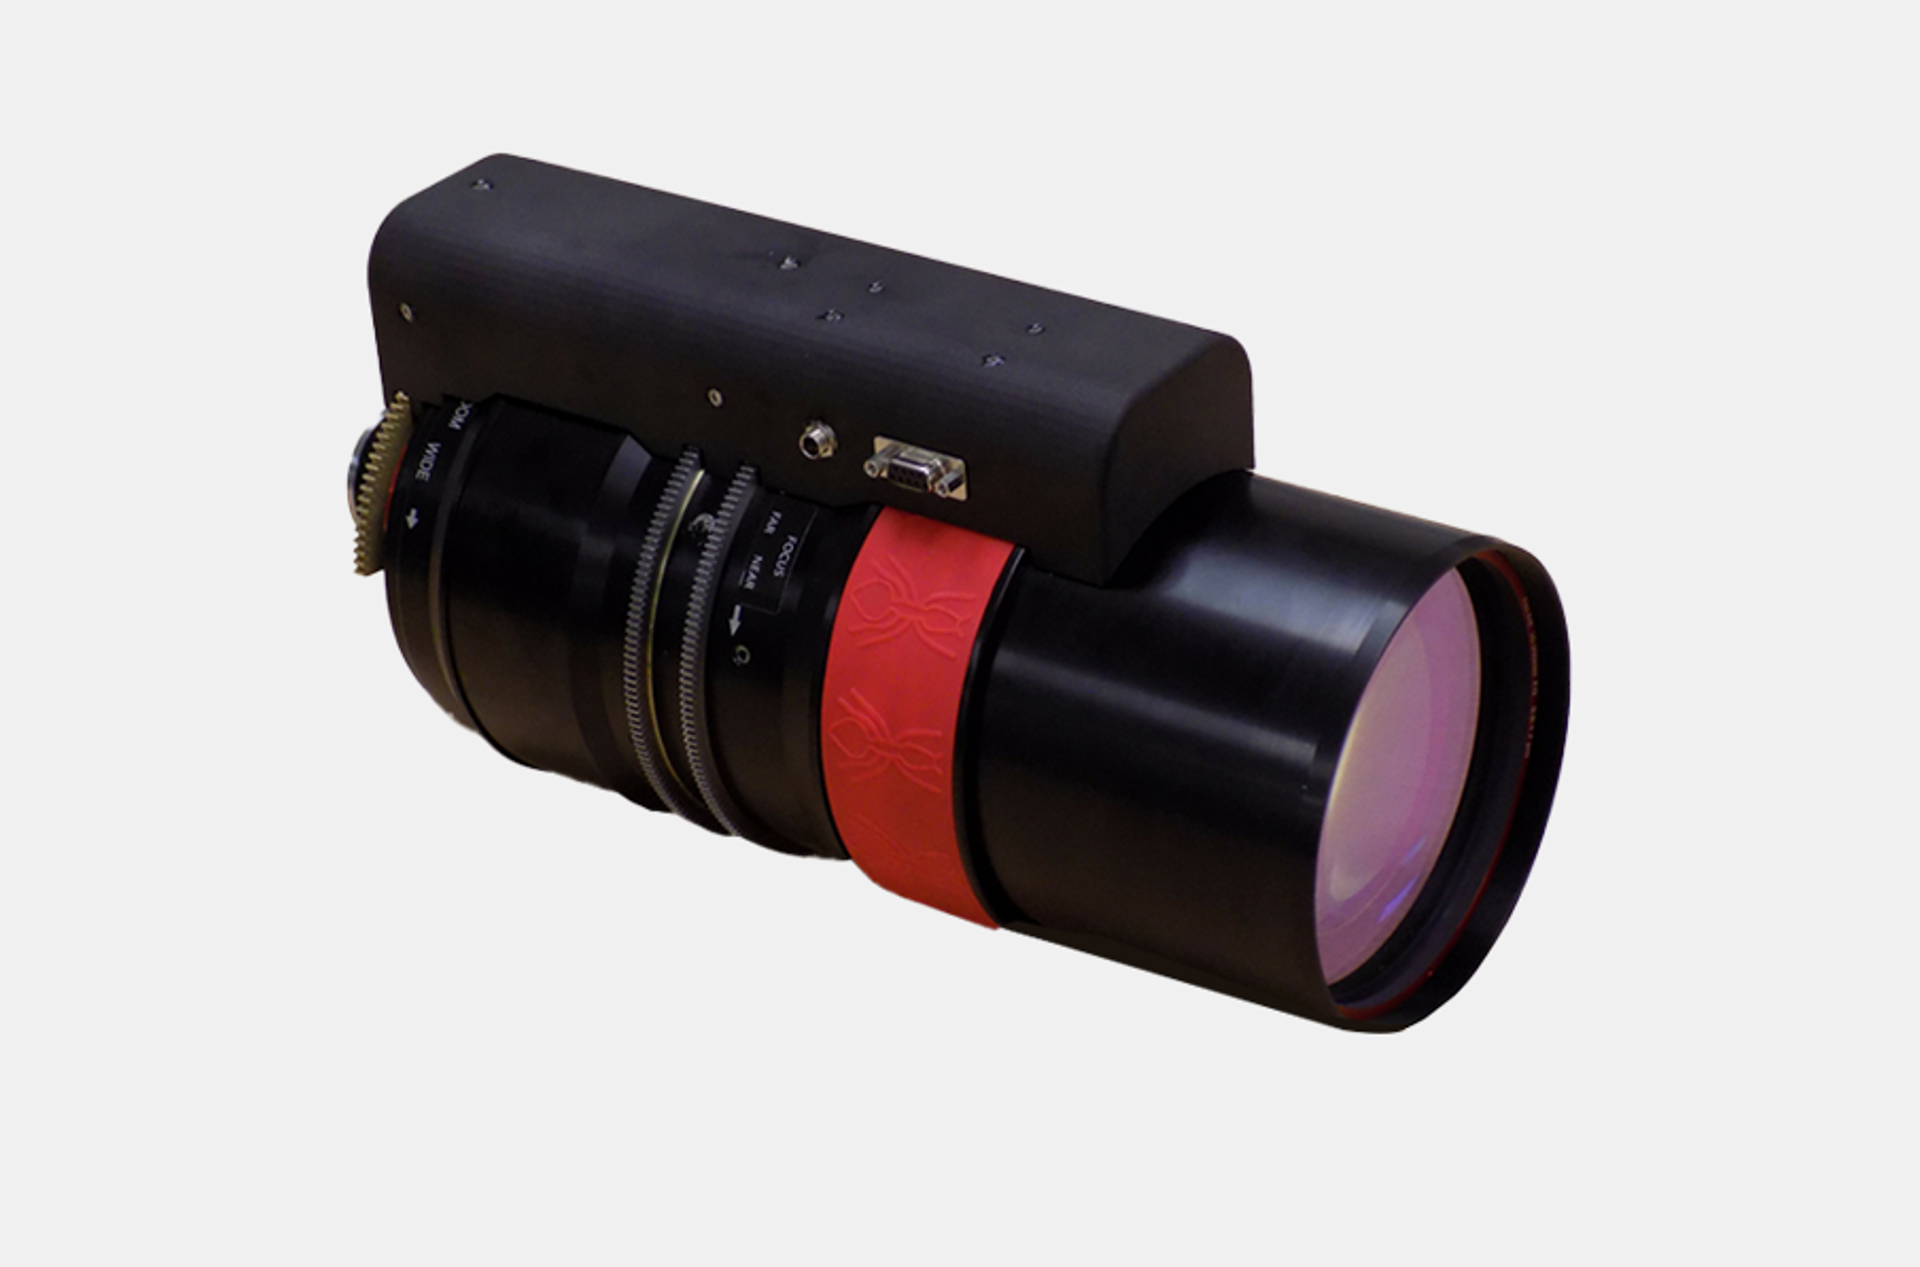 FireAnt zoom lens